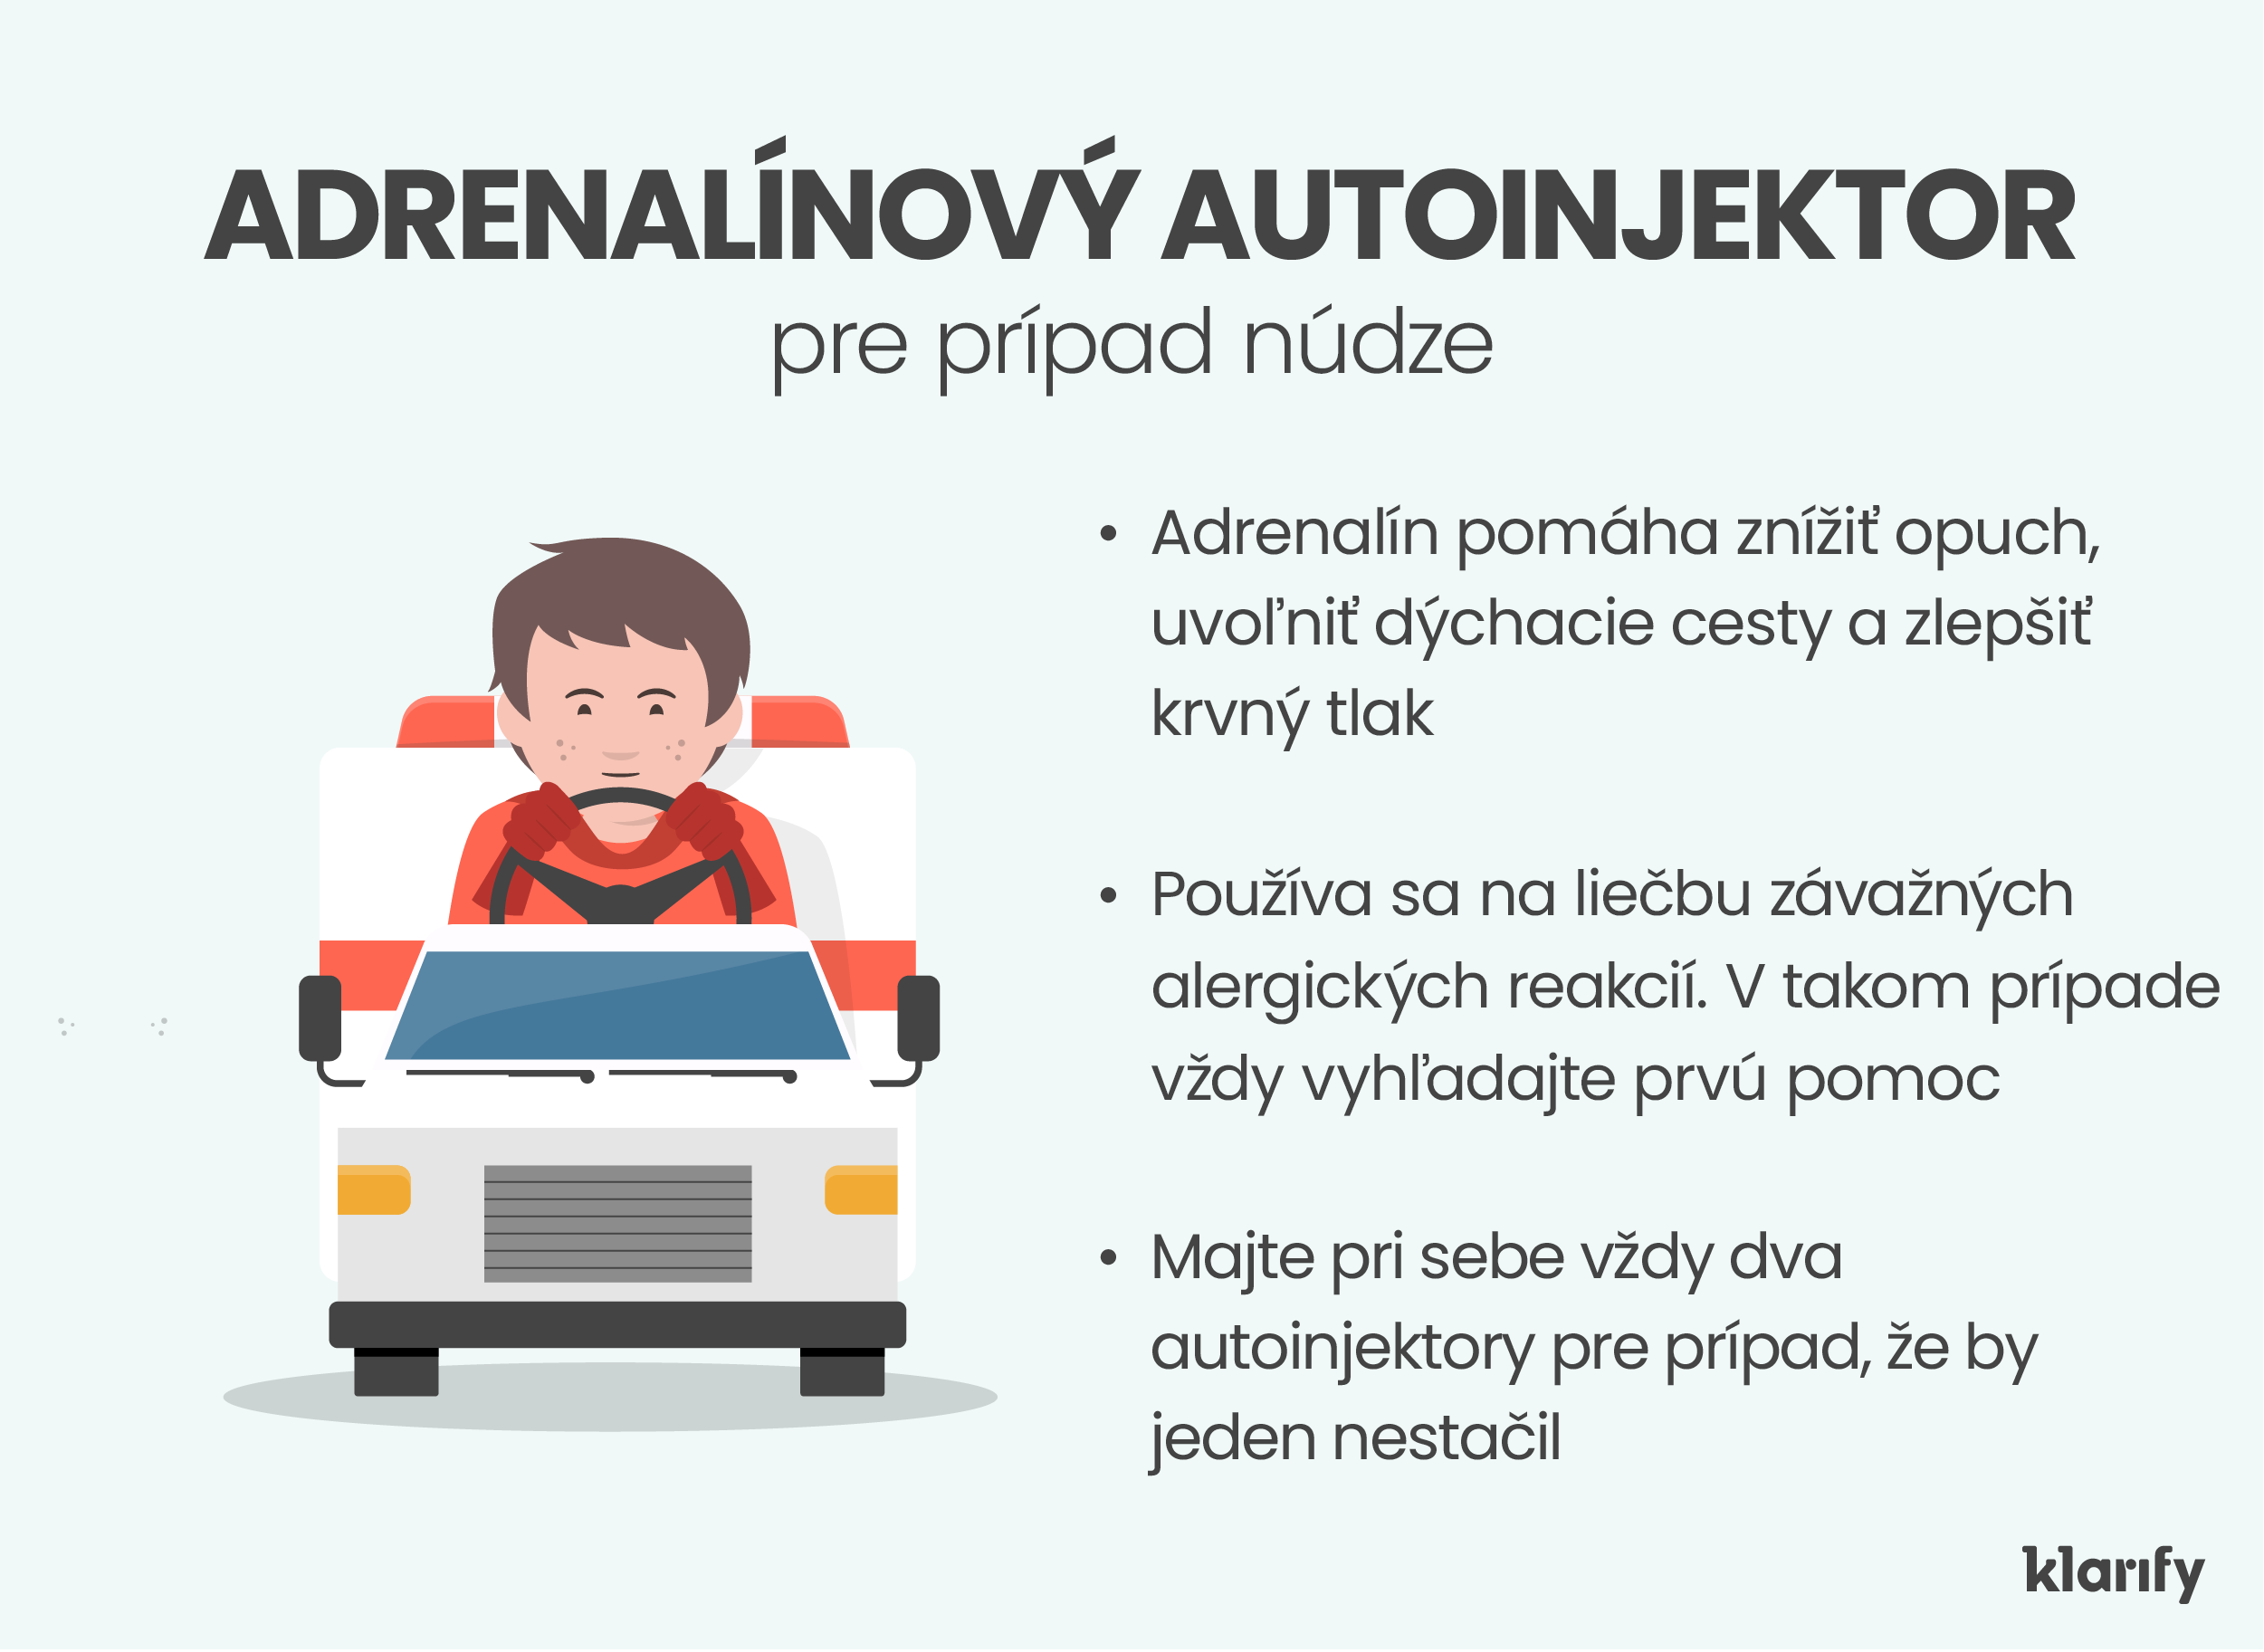 Infografika popisujúca adrenalínové autoinjektory, ktoré sú pohotovostným liekom na alergiu pre deti. Podrobnosti infografiky sa nachádzajú nižšie